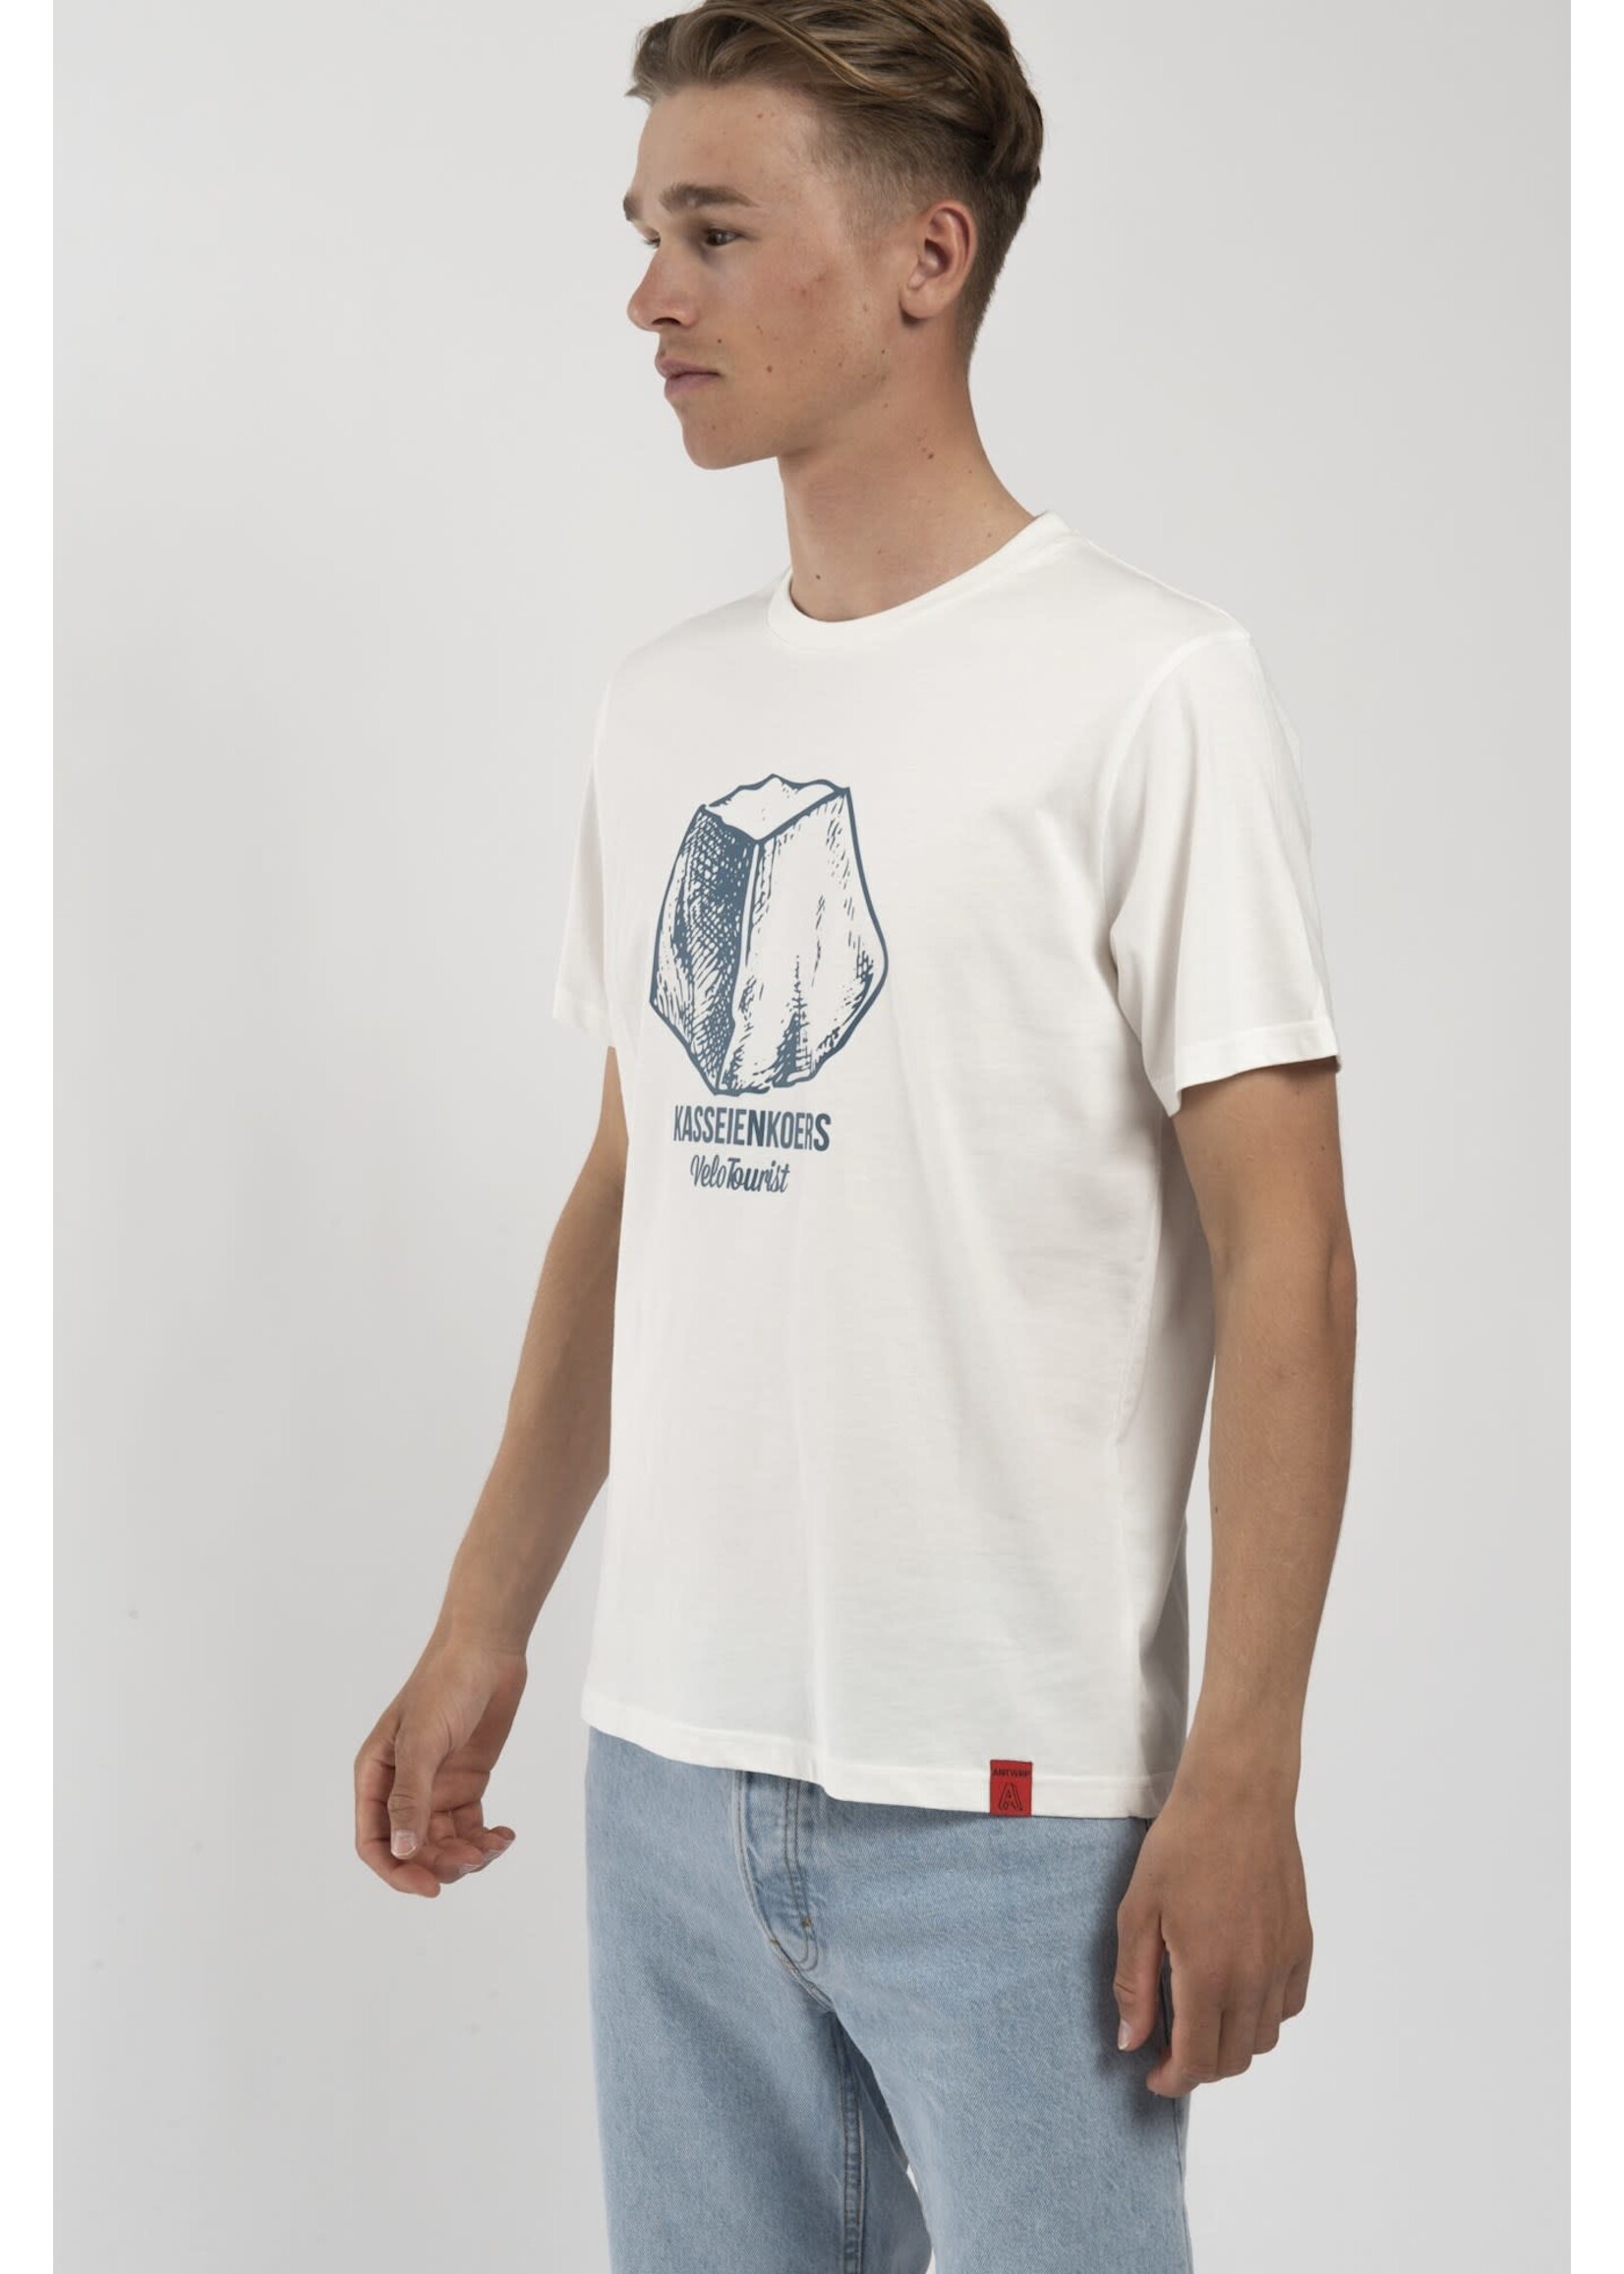 Antwrp Antwrp - T-shirt Kasseienkoers - Wit